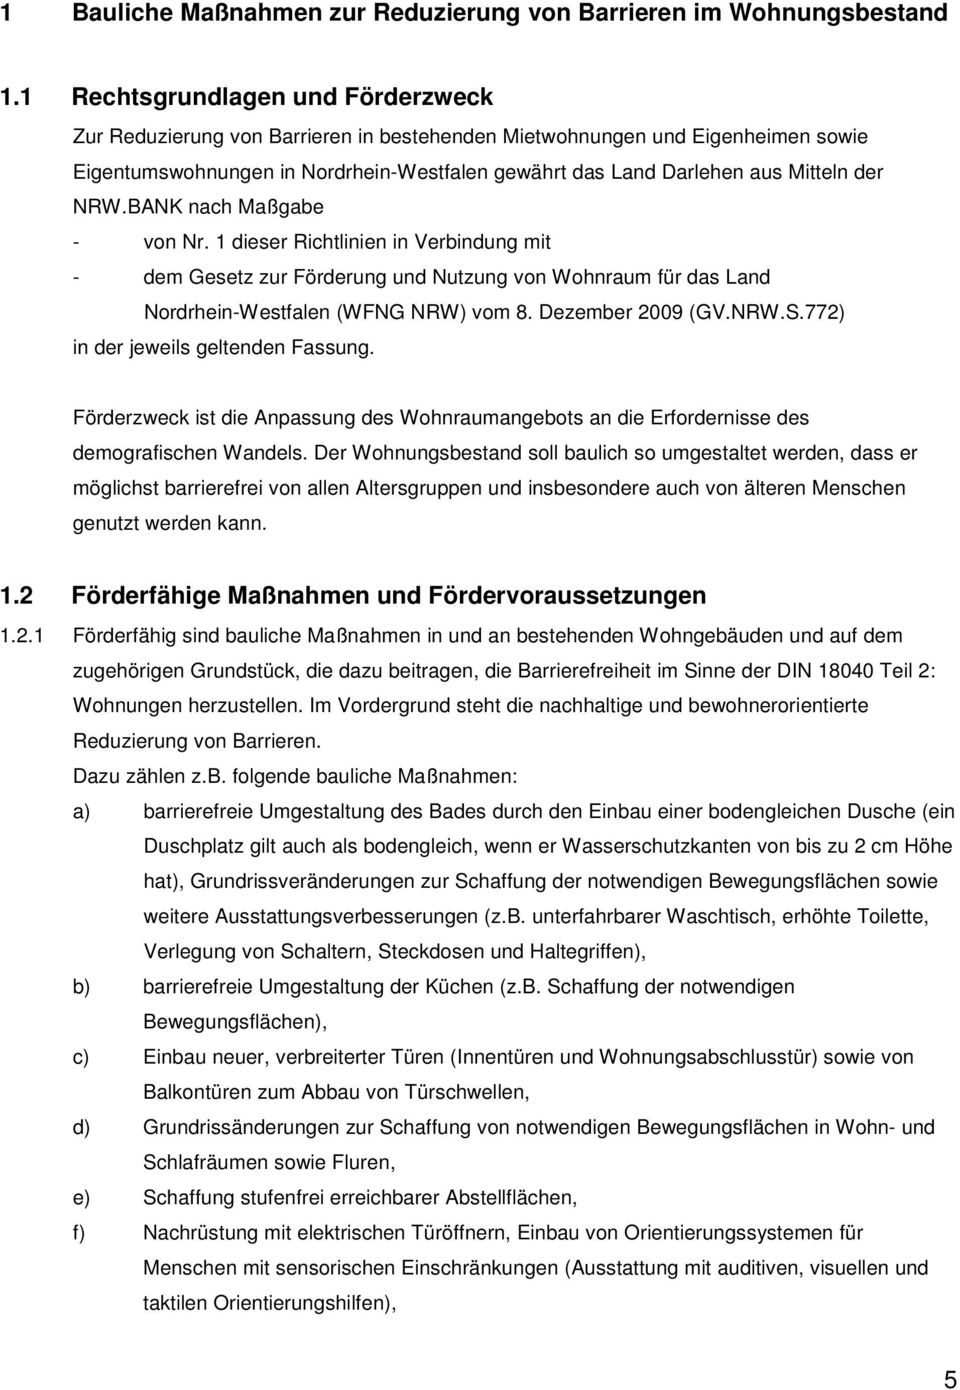 NRW.BANK nach Maßgabe - von Nr. 1 dieser Richtlinien in Verbindung mit - dem Gesetz zur Förderung und Nutzung von Wohnraum für das Land Nordrhein-Westfalen (WFNG NRW) vom 8. Dezember 2009 (GV.NRW.S.